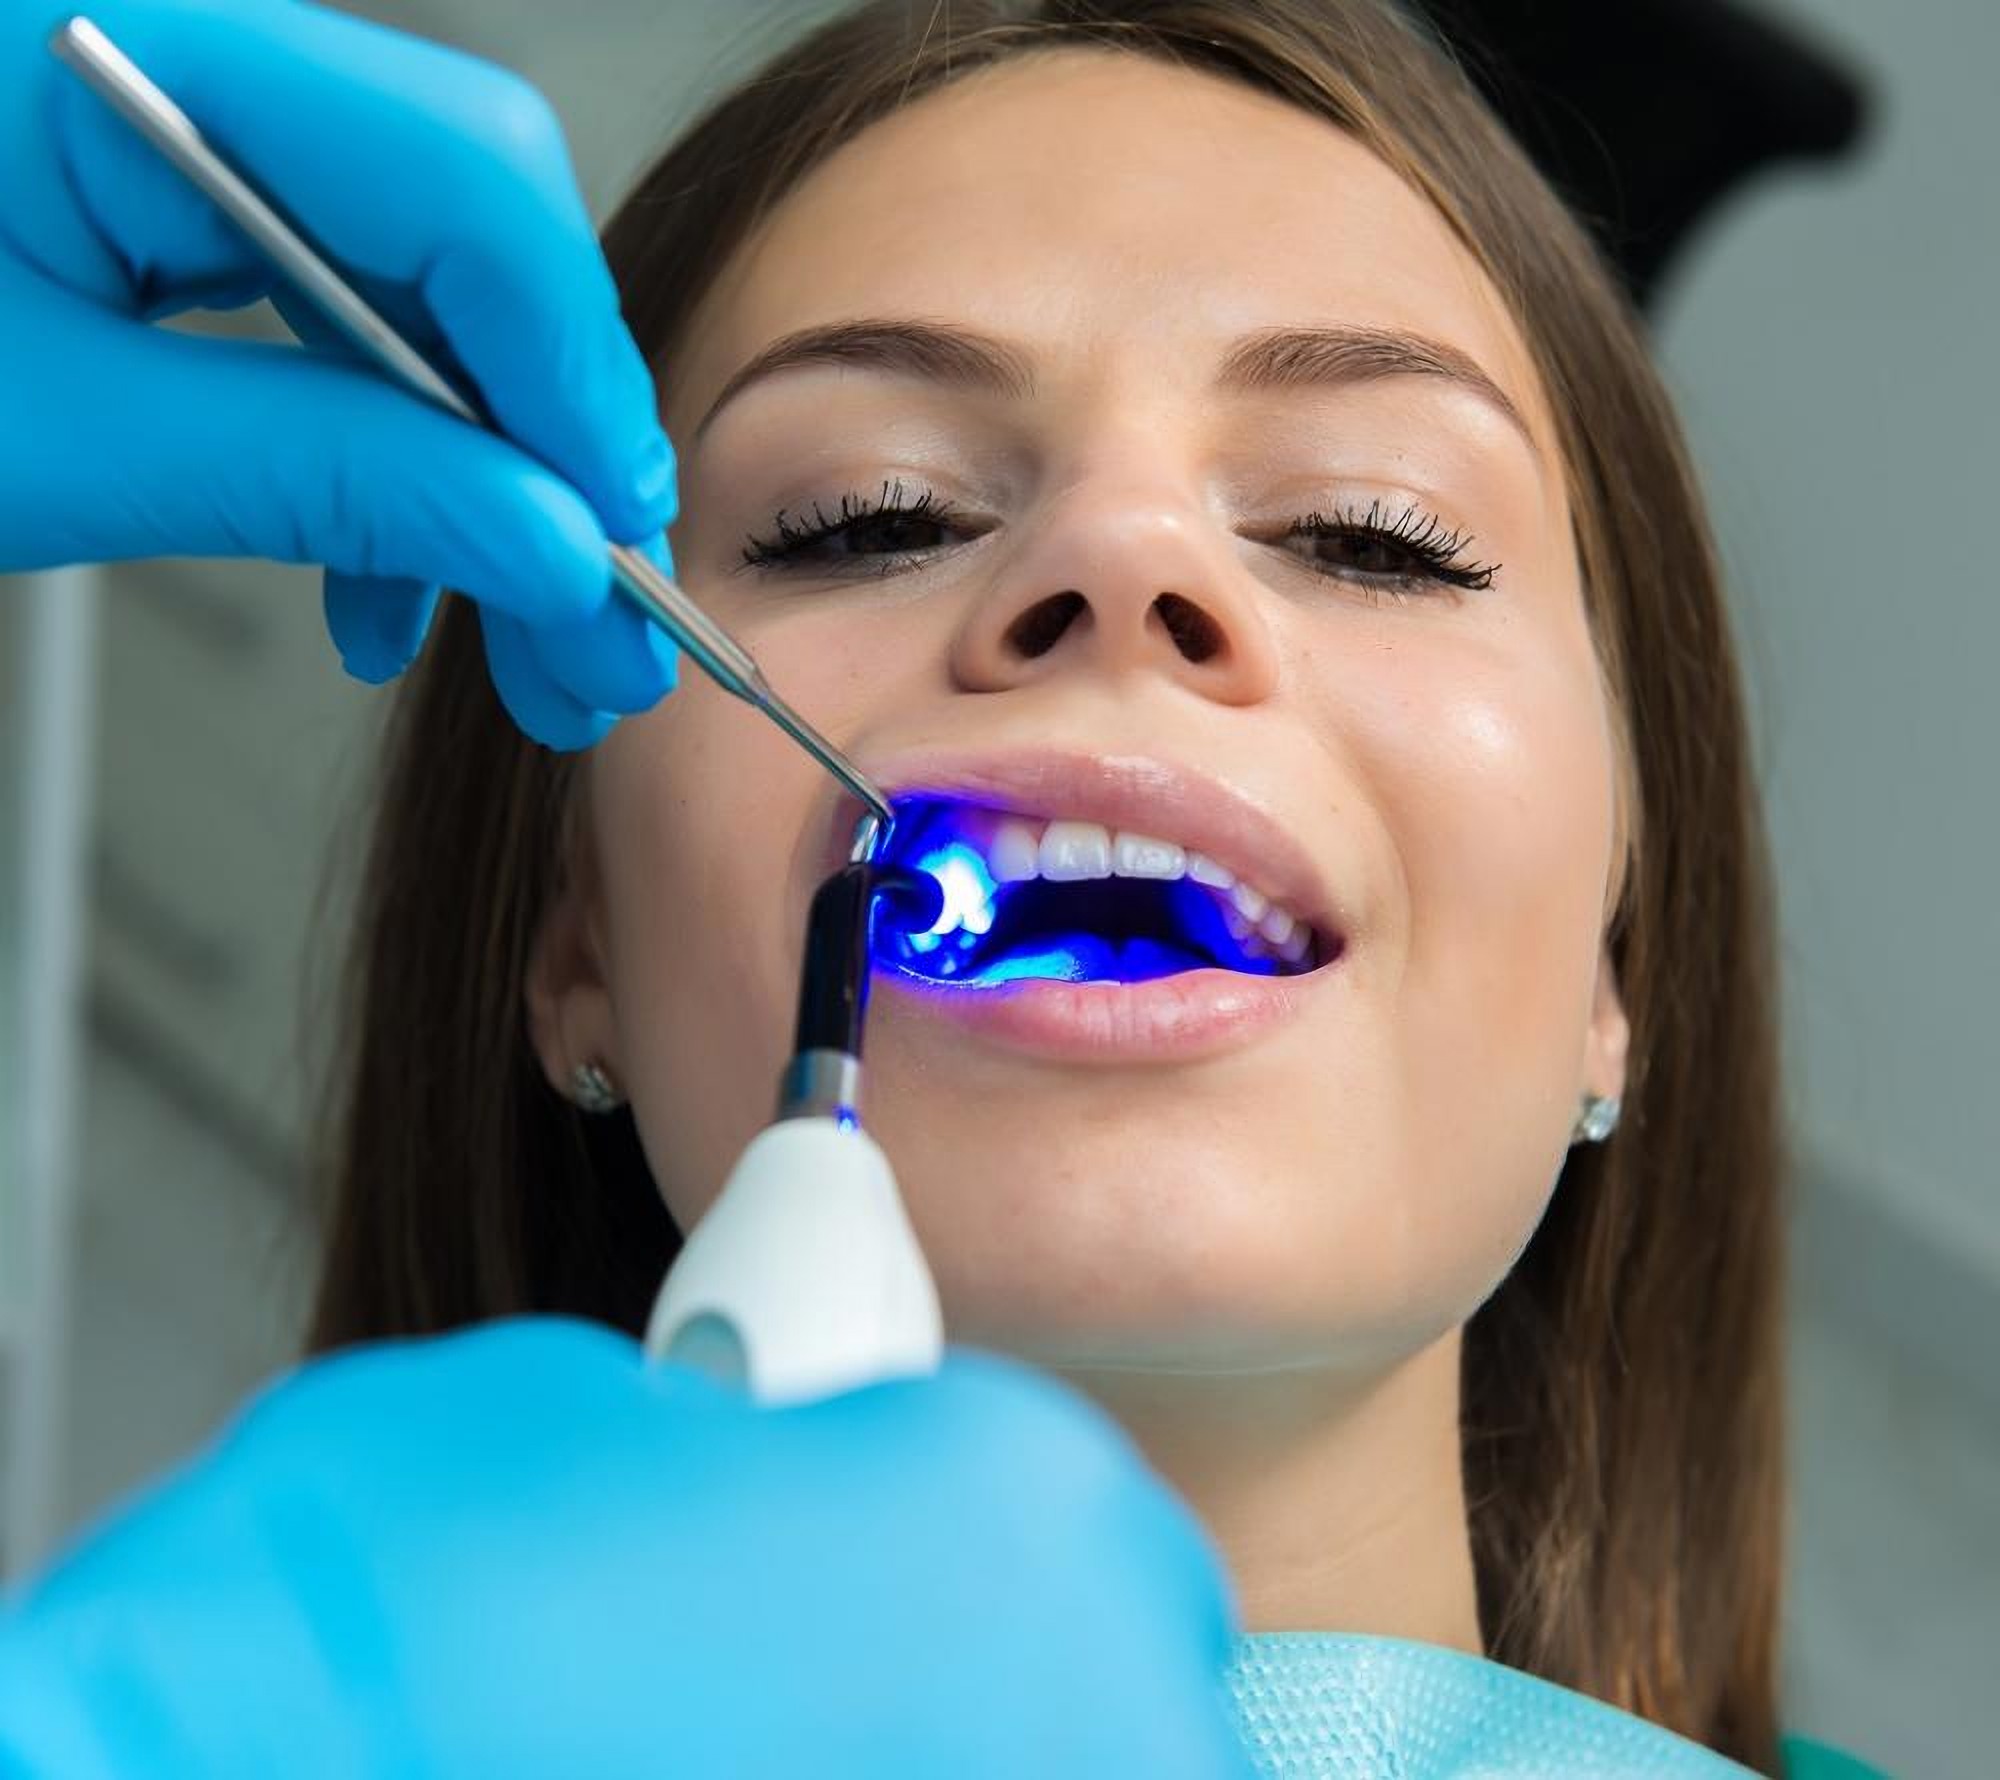 Пломбирование зубов в стоматологической клинике Granddent в Одессе Украина